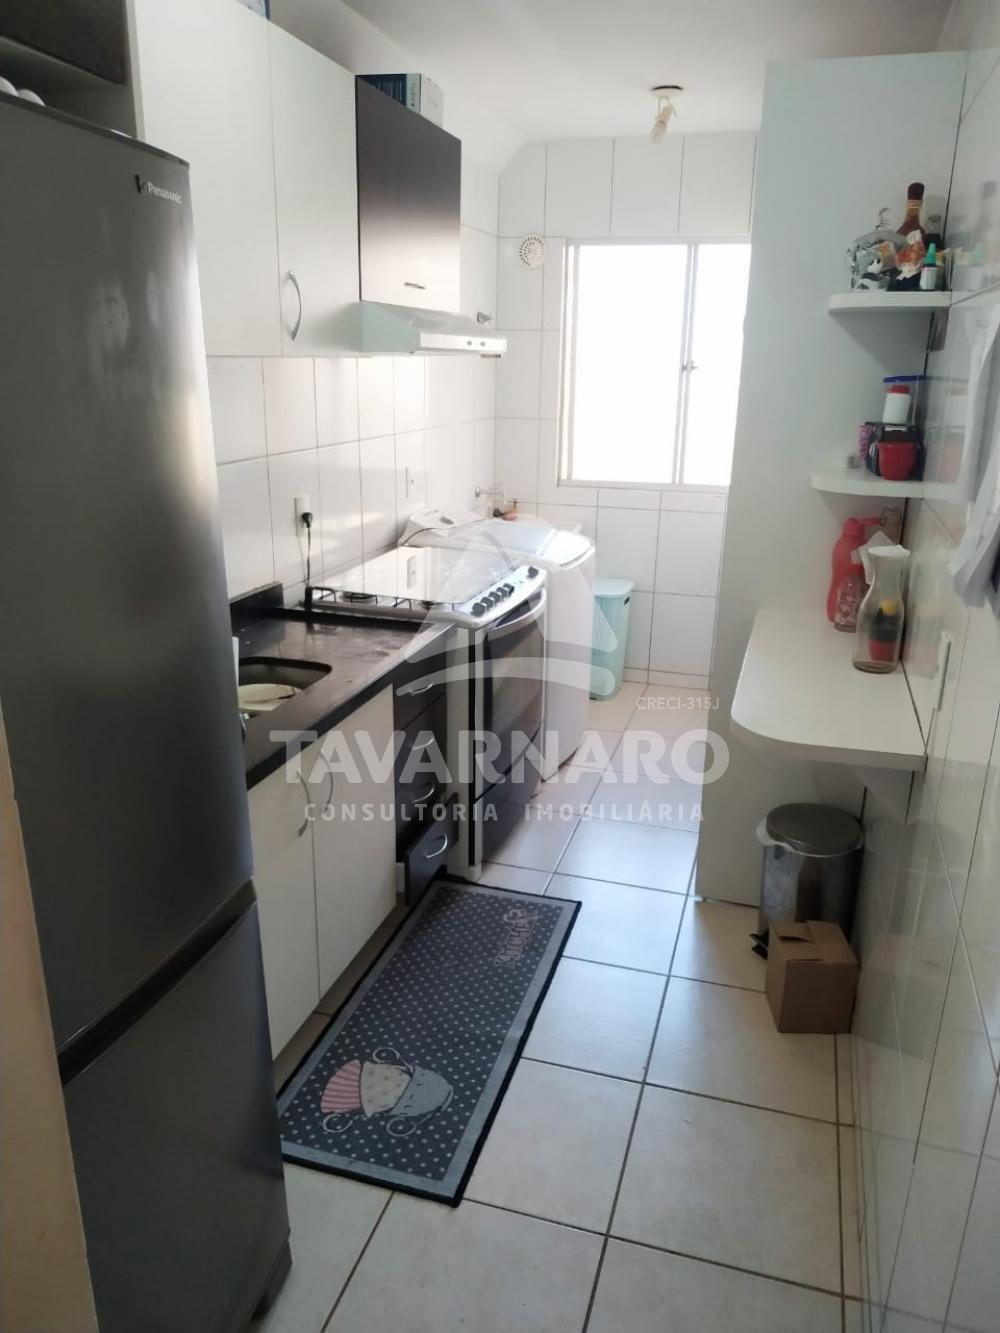 Comprar Apartamento / Padrão em Ponta Grossa R$ 118.000,00 - Foto 5